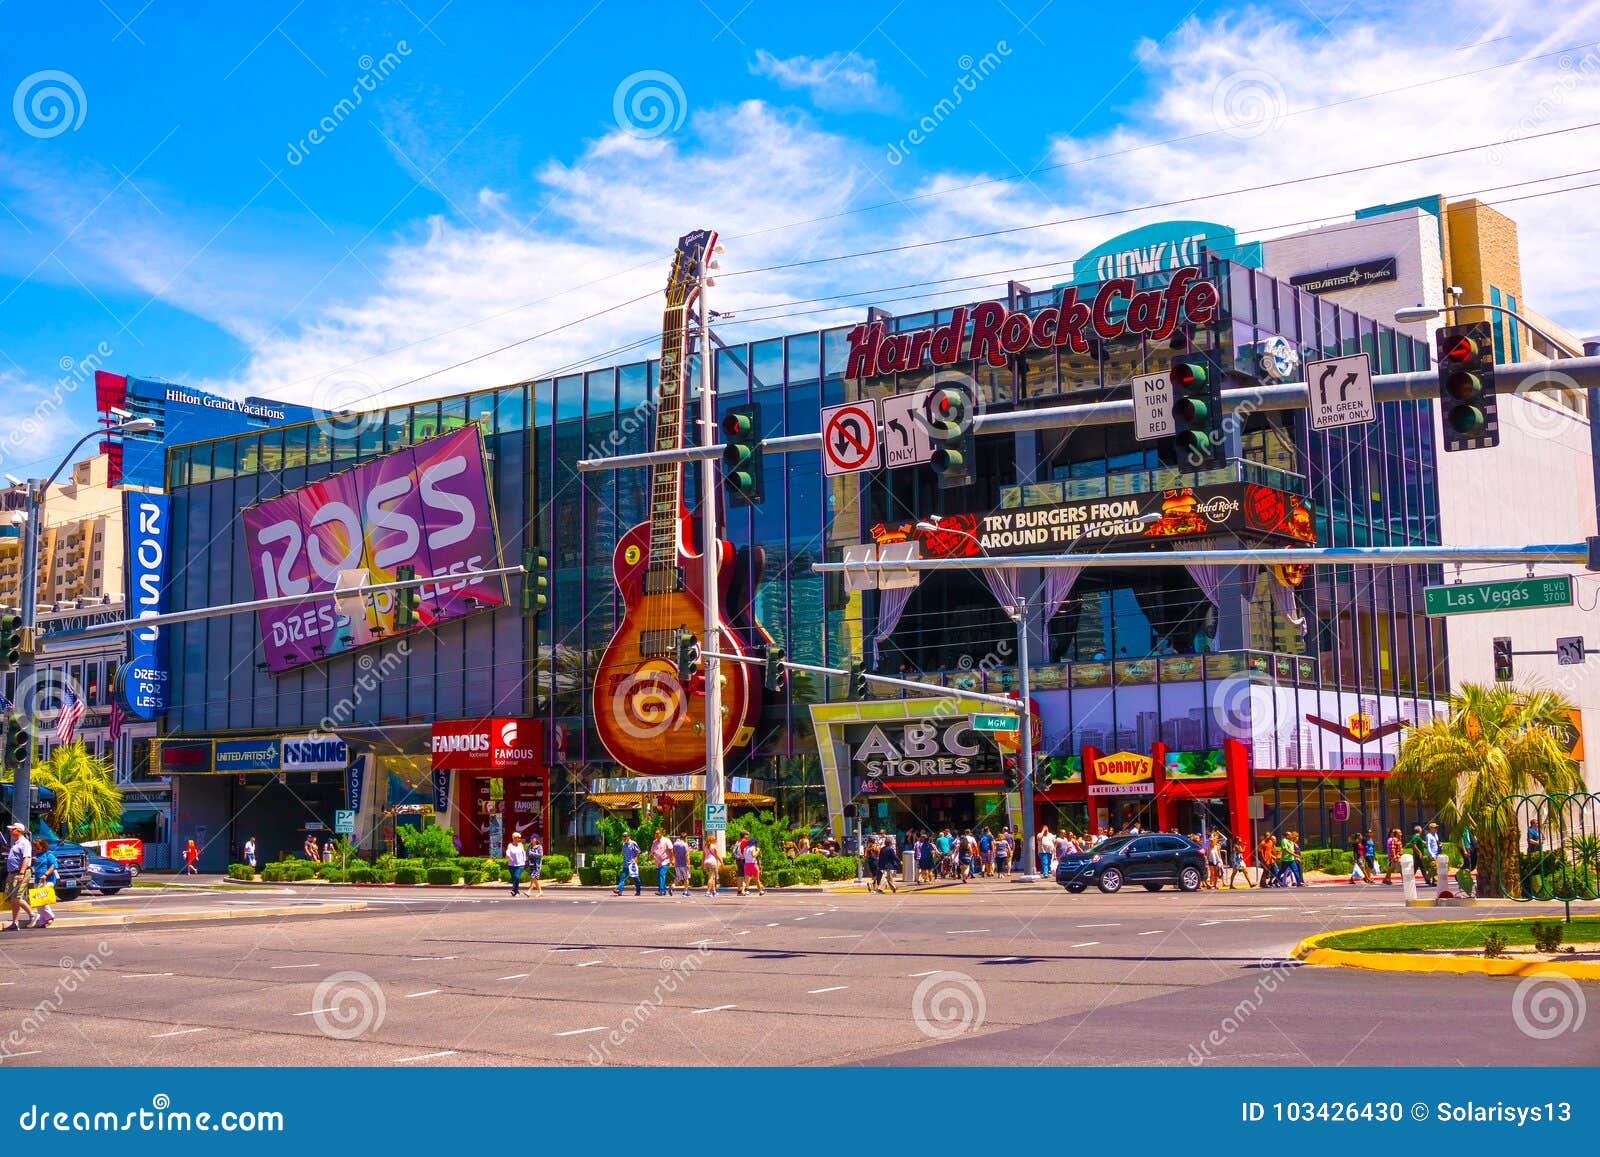 Hard Rock Cafe Las Vegas Strip